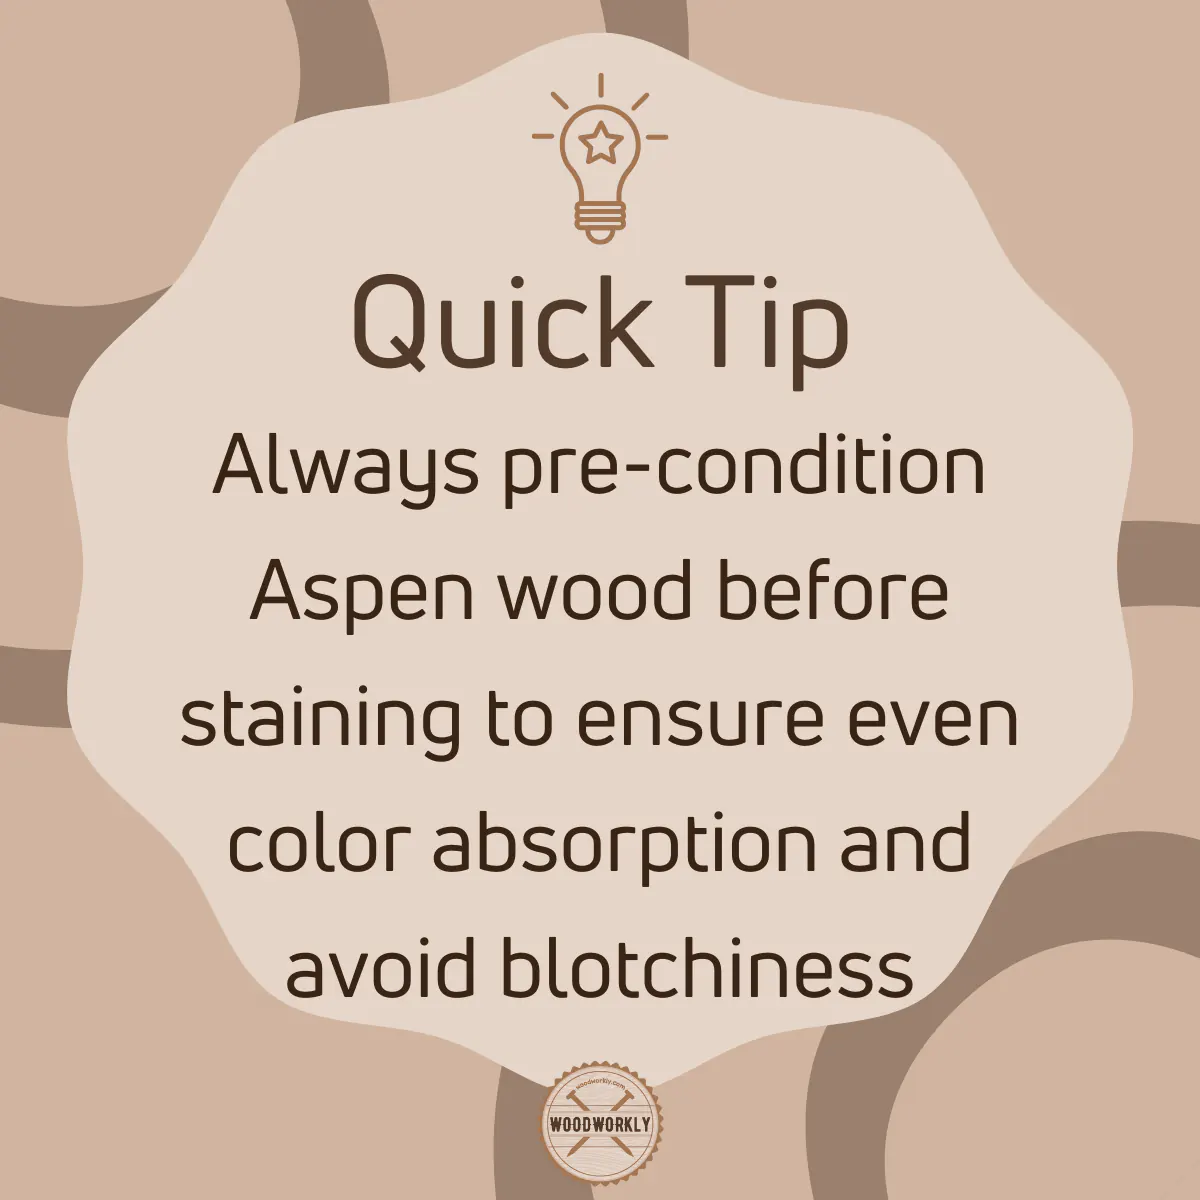 Tip for staining aspen wood